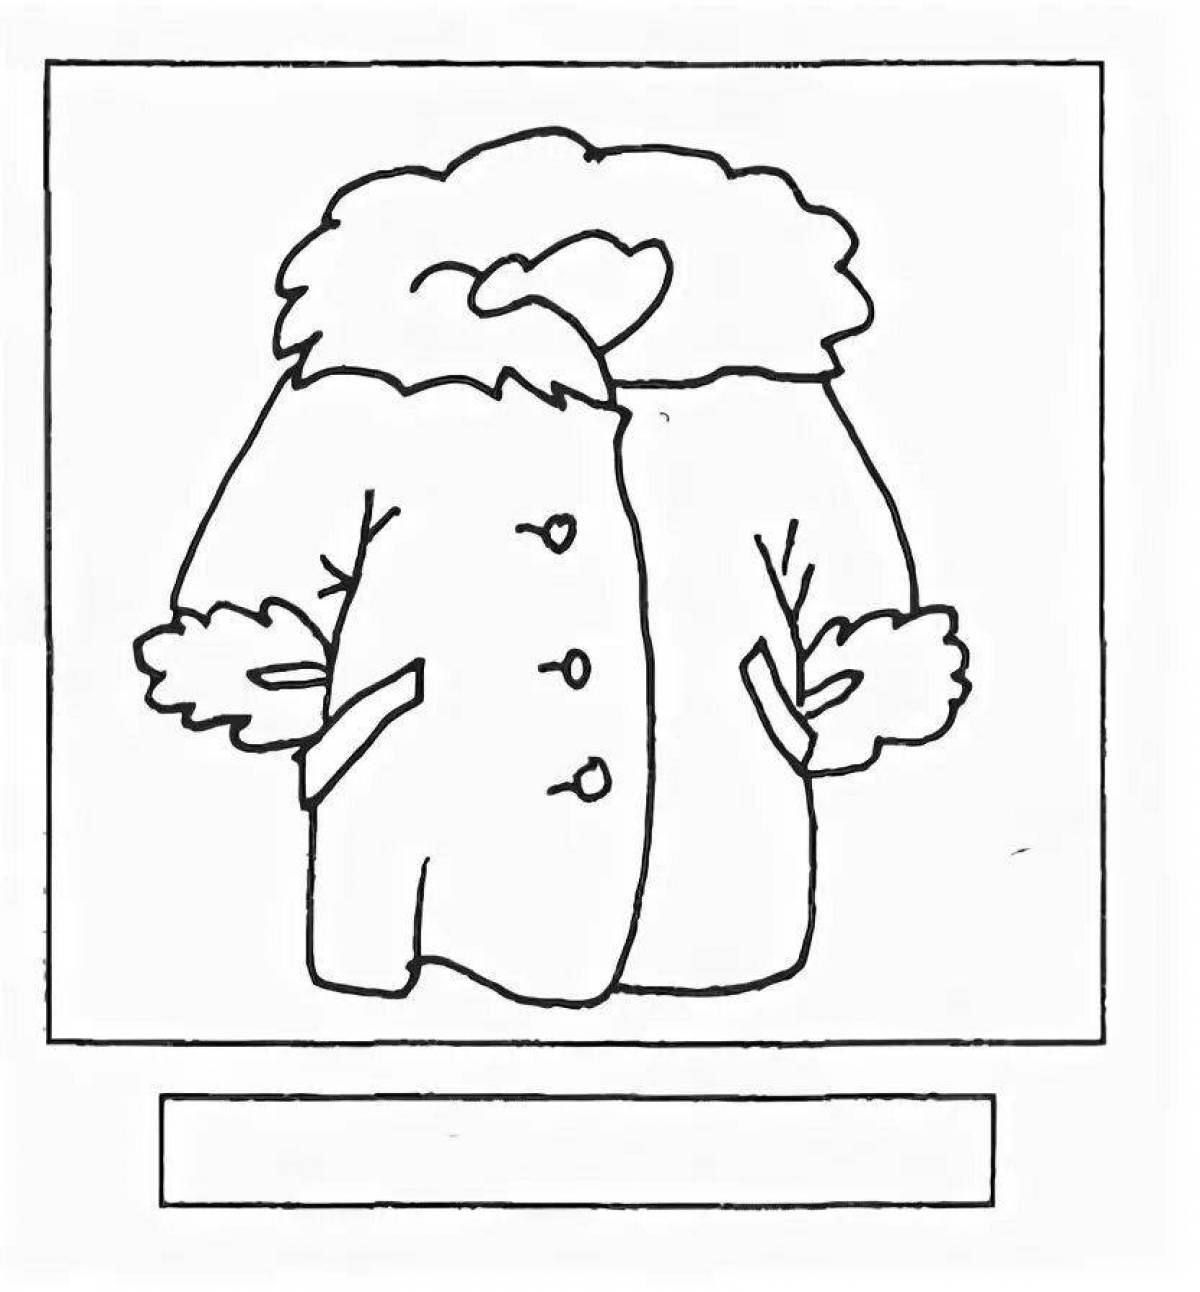 Fun coat coloring for kids